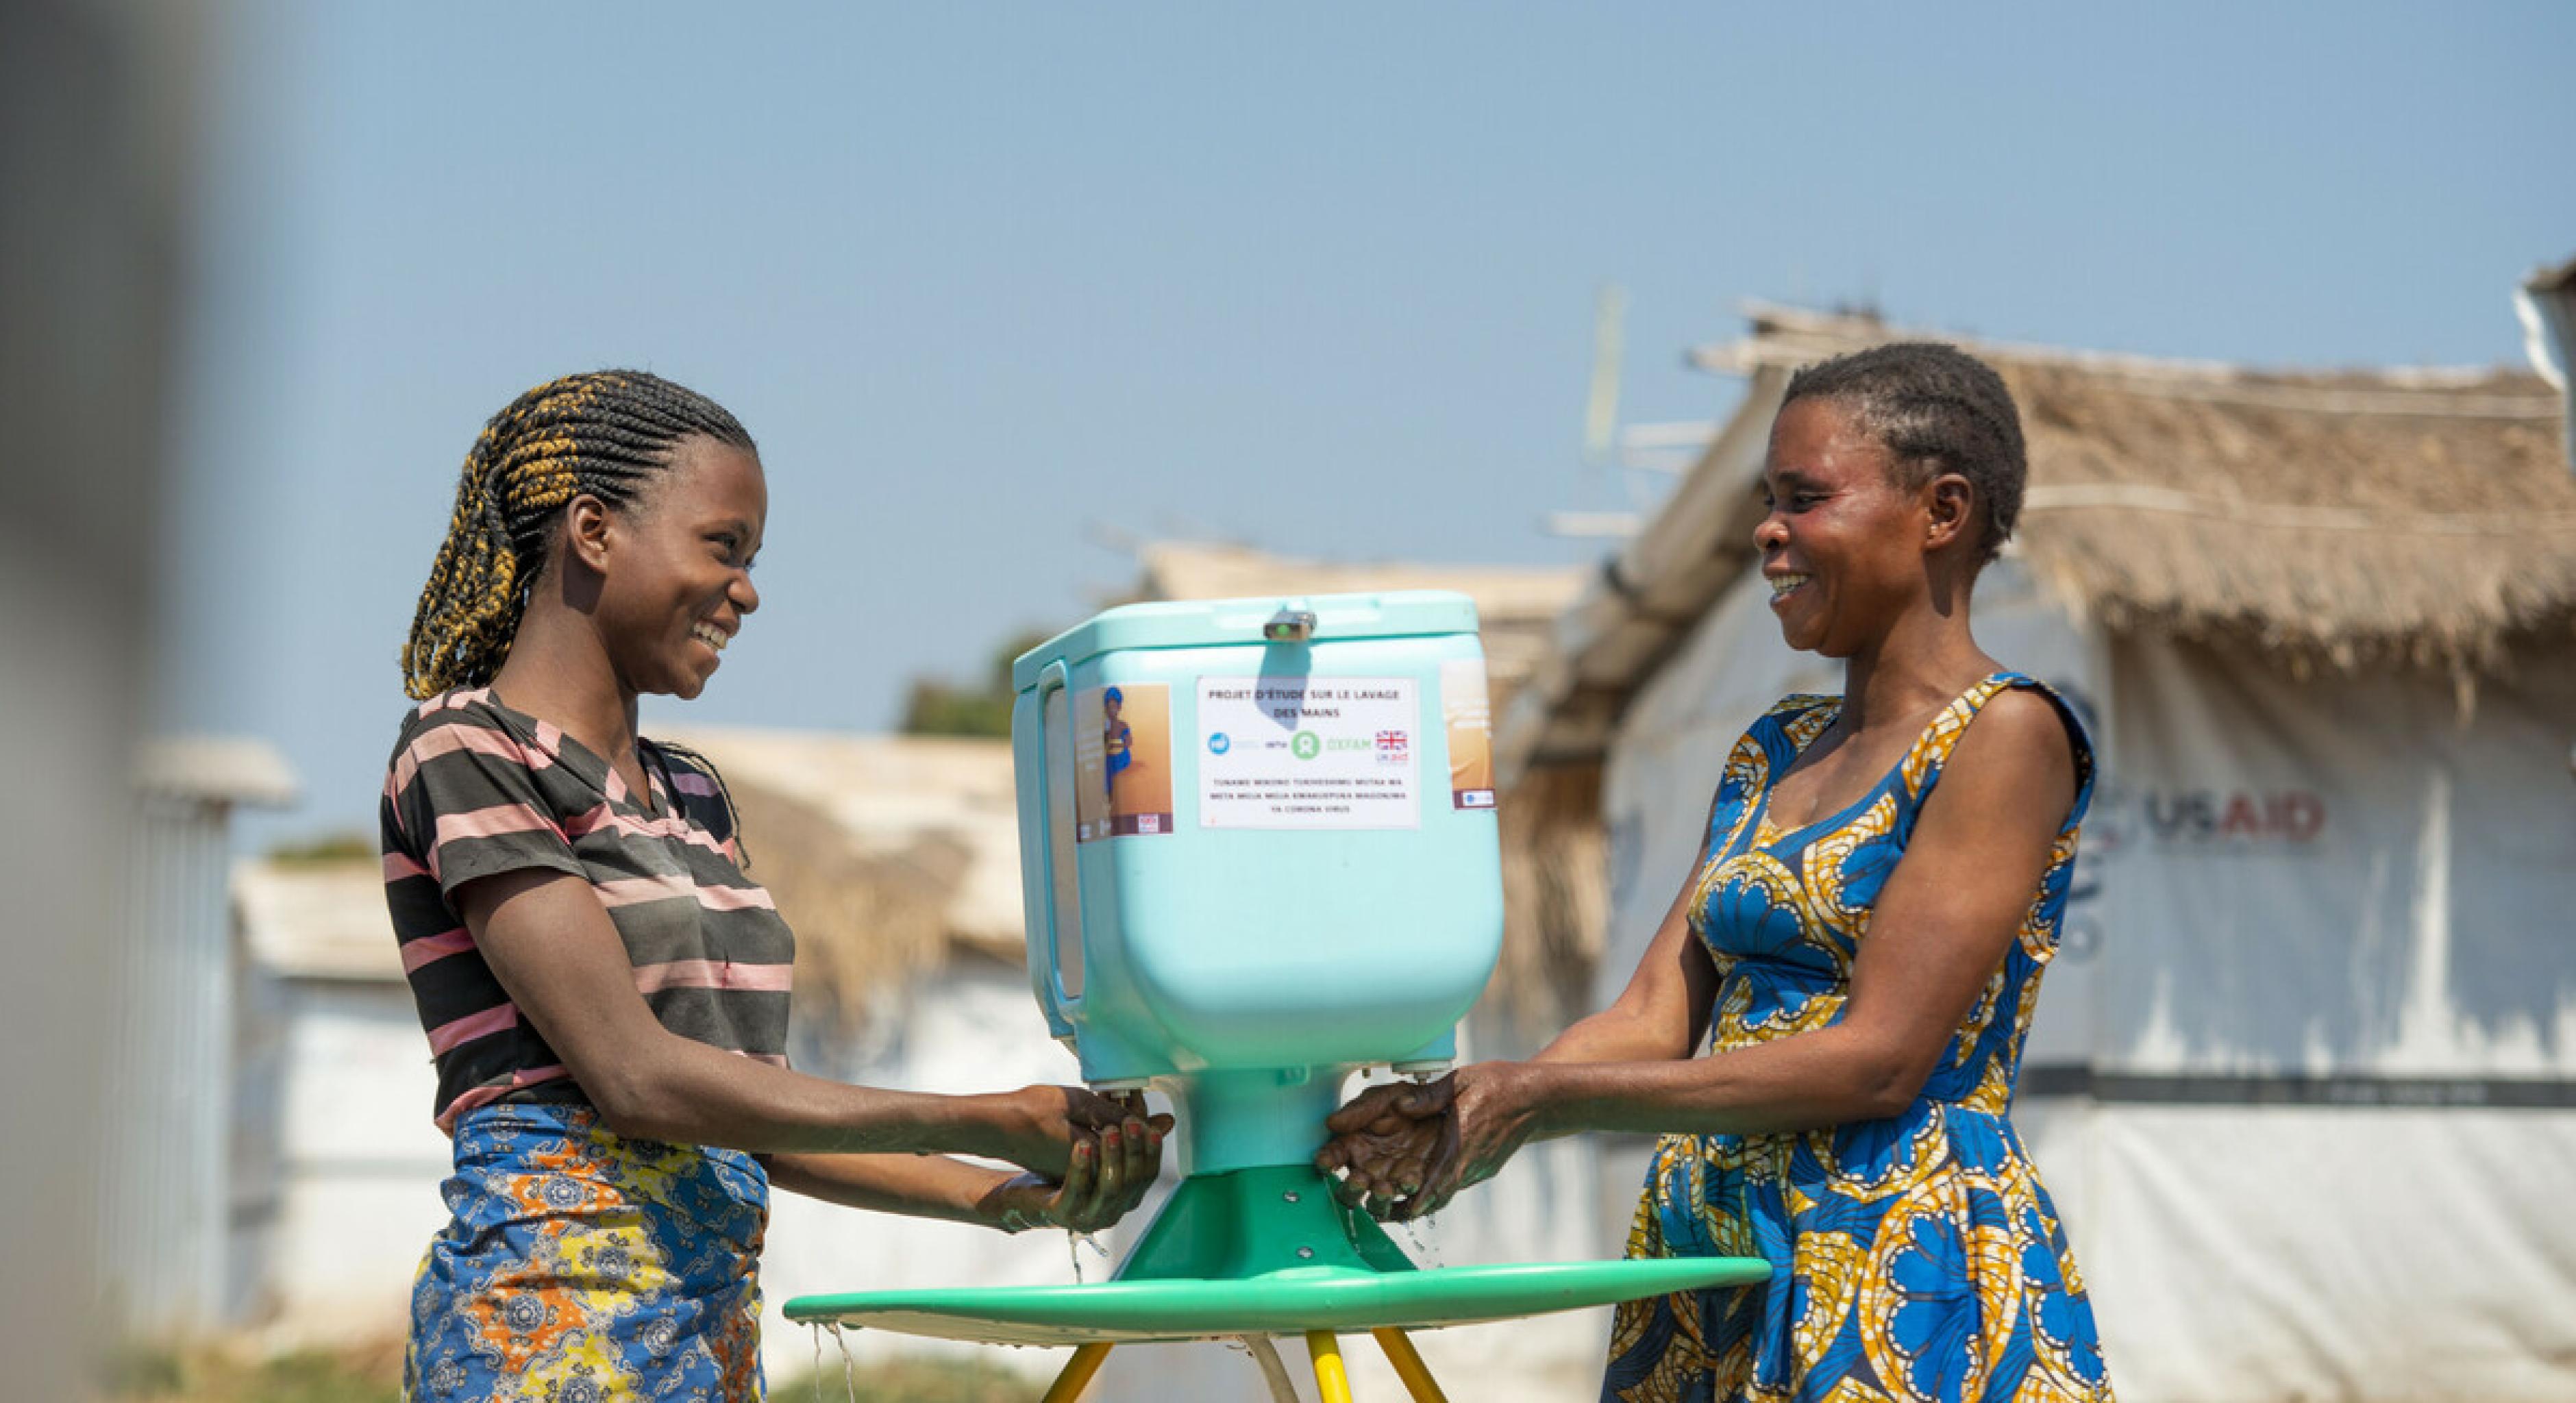 Zwei Frauen waschen ihre Hände an einer Handwasch-Station im Geflüchtetencamp in Kisalaba (Demokratische Republik Kongo). Die Frauen schauen einander lächelnd an.